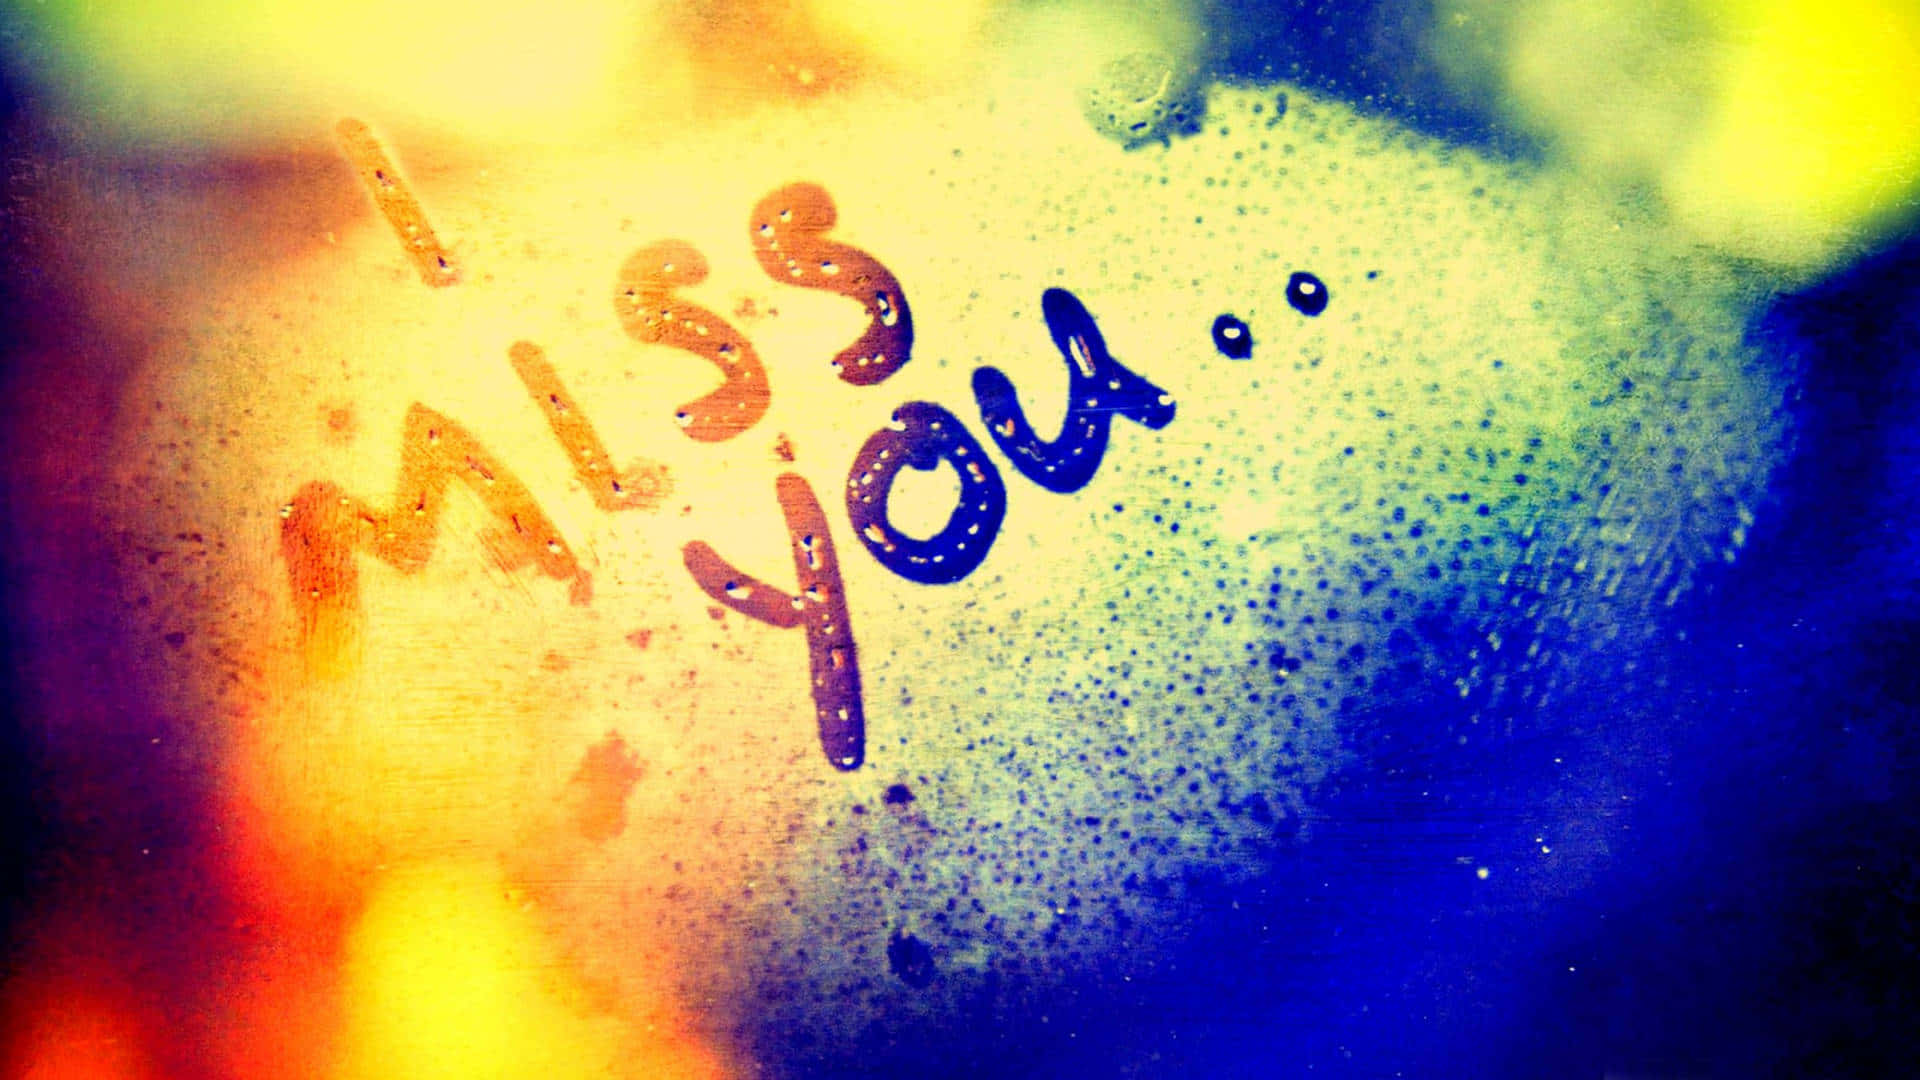 A heartfelt message of "I Miss You" on a foggy window